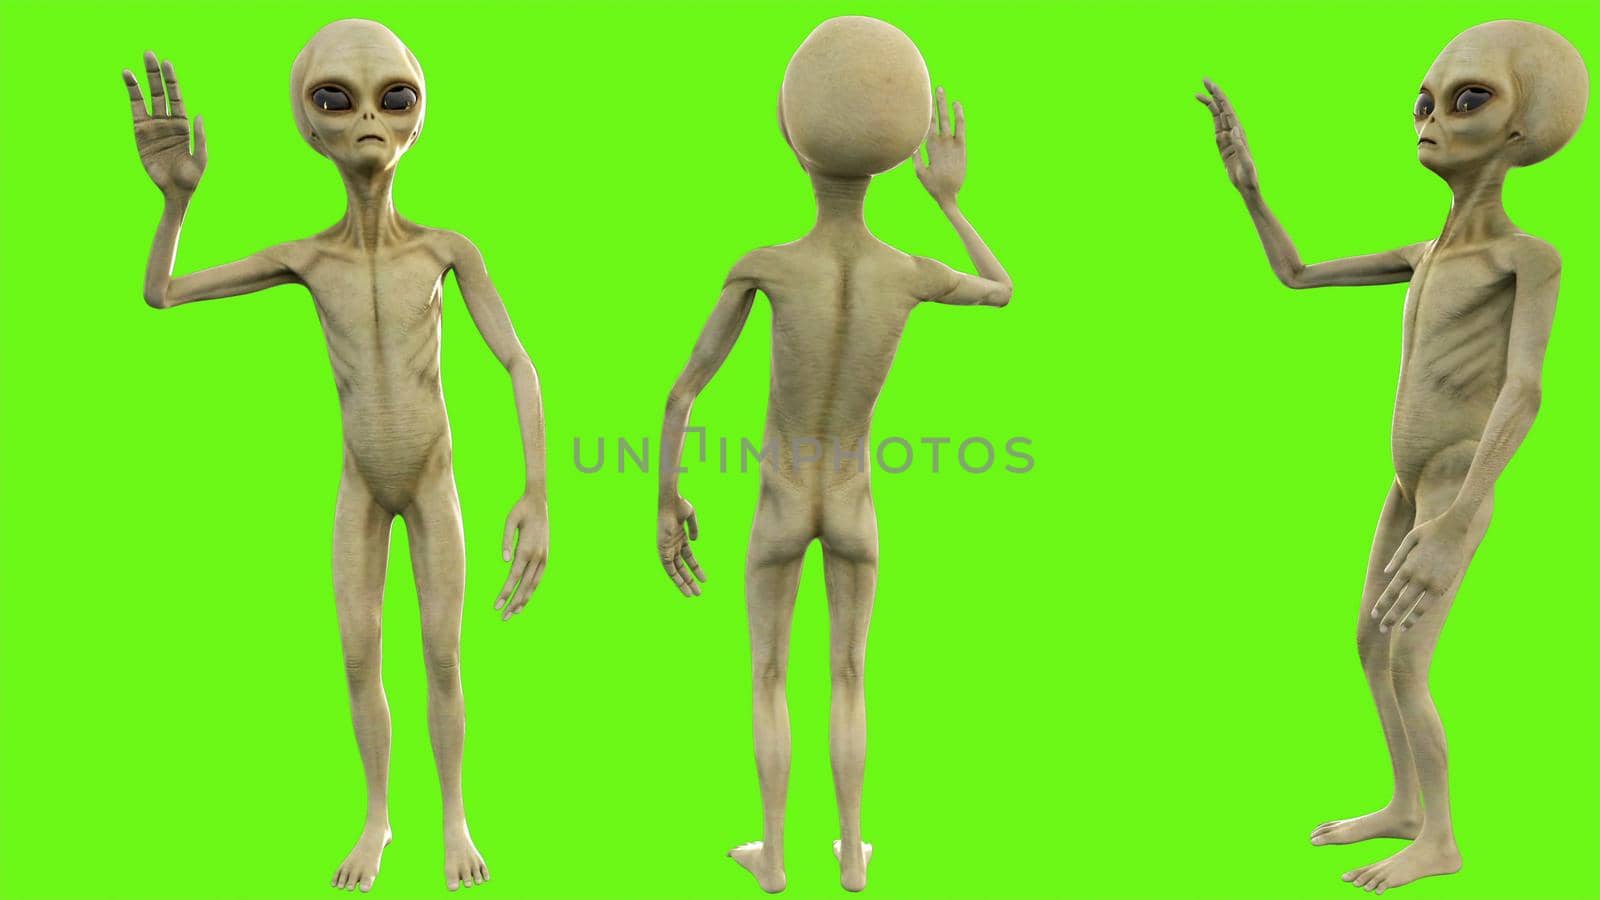 Alien salute on green screen. 3D rendering by designprojects